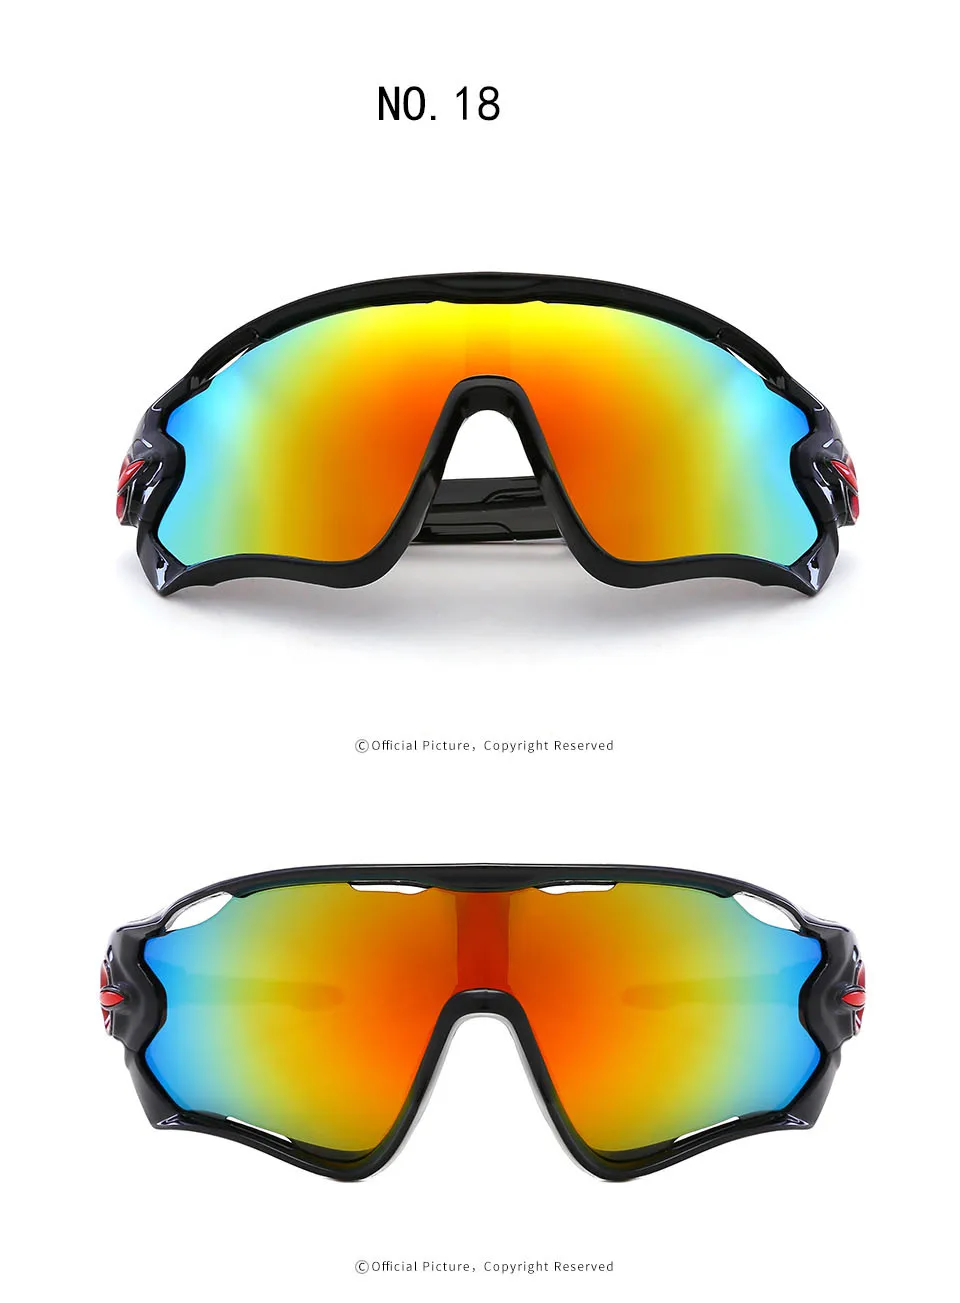 Очки для велоспорта, мужские, женские, для горного велосипеда, велосипедные очки TR90, для спорта на открытом воздухе, поляризационные солнцезащитные очки, UV400, очки для верховой езды